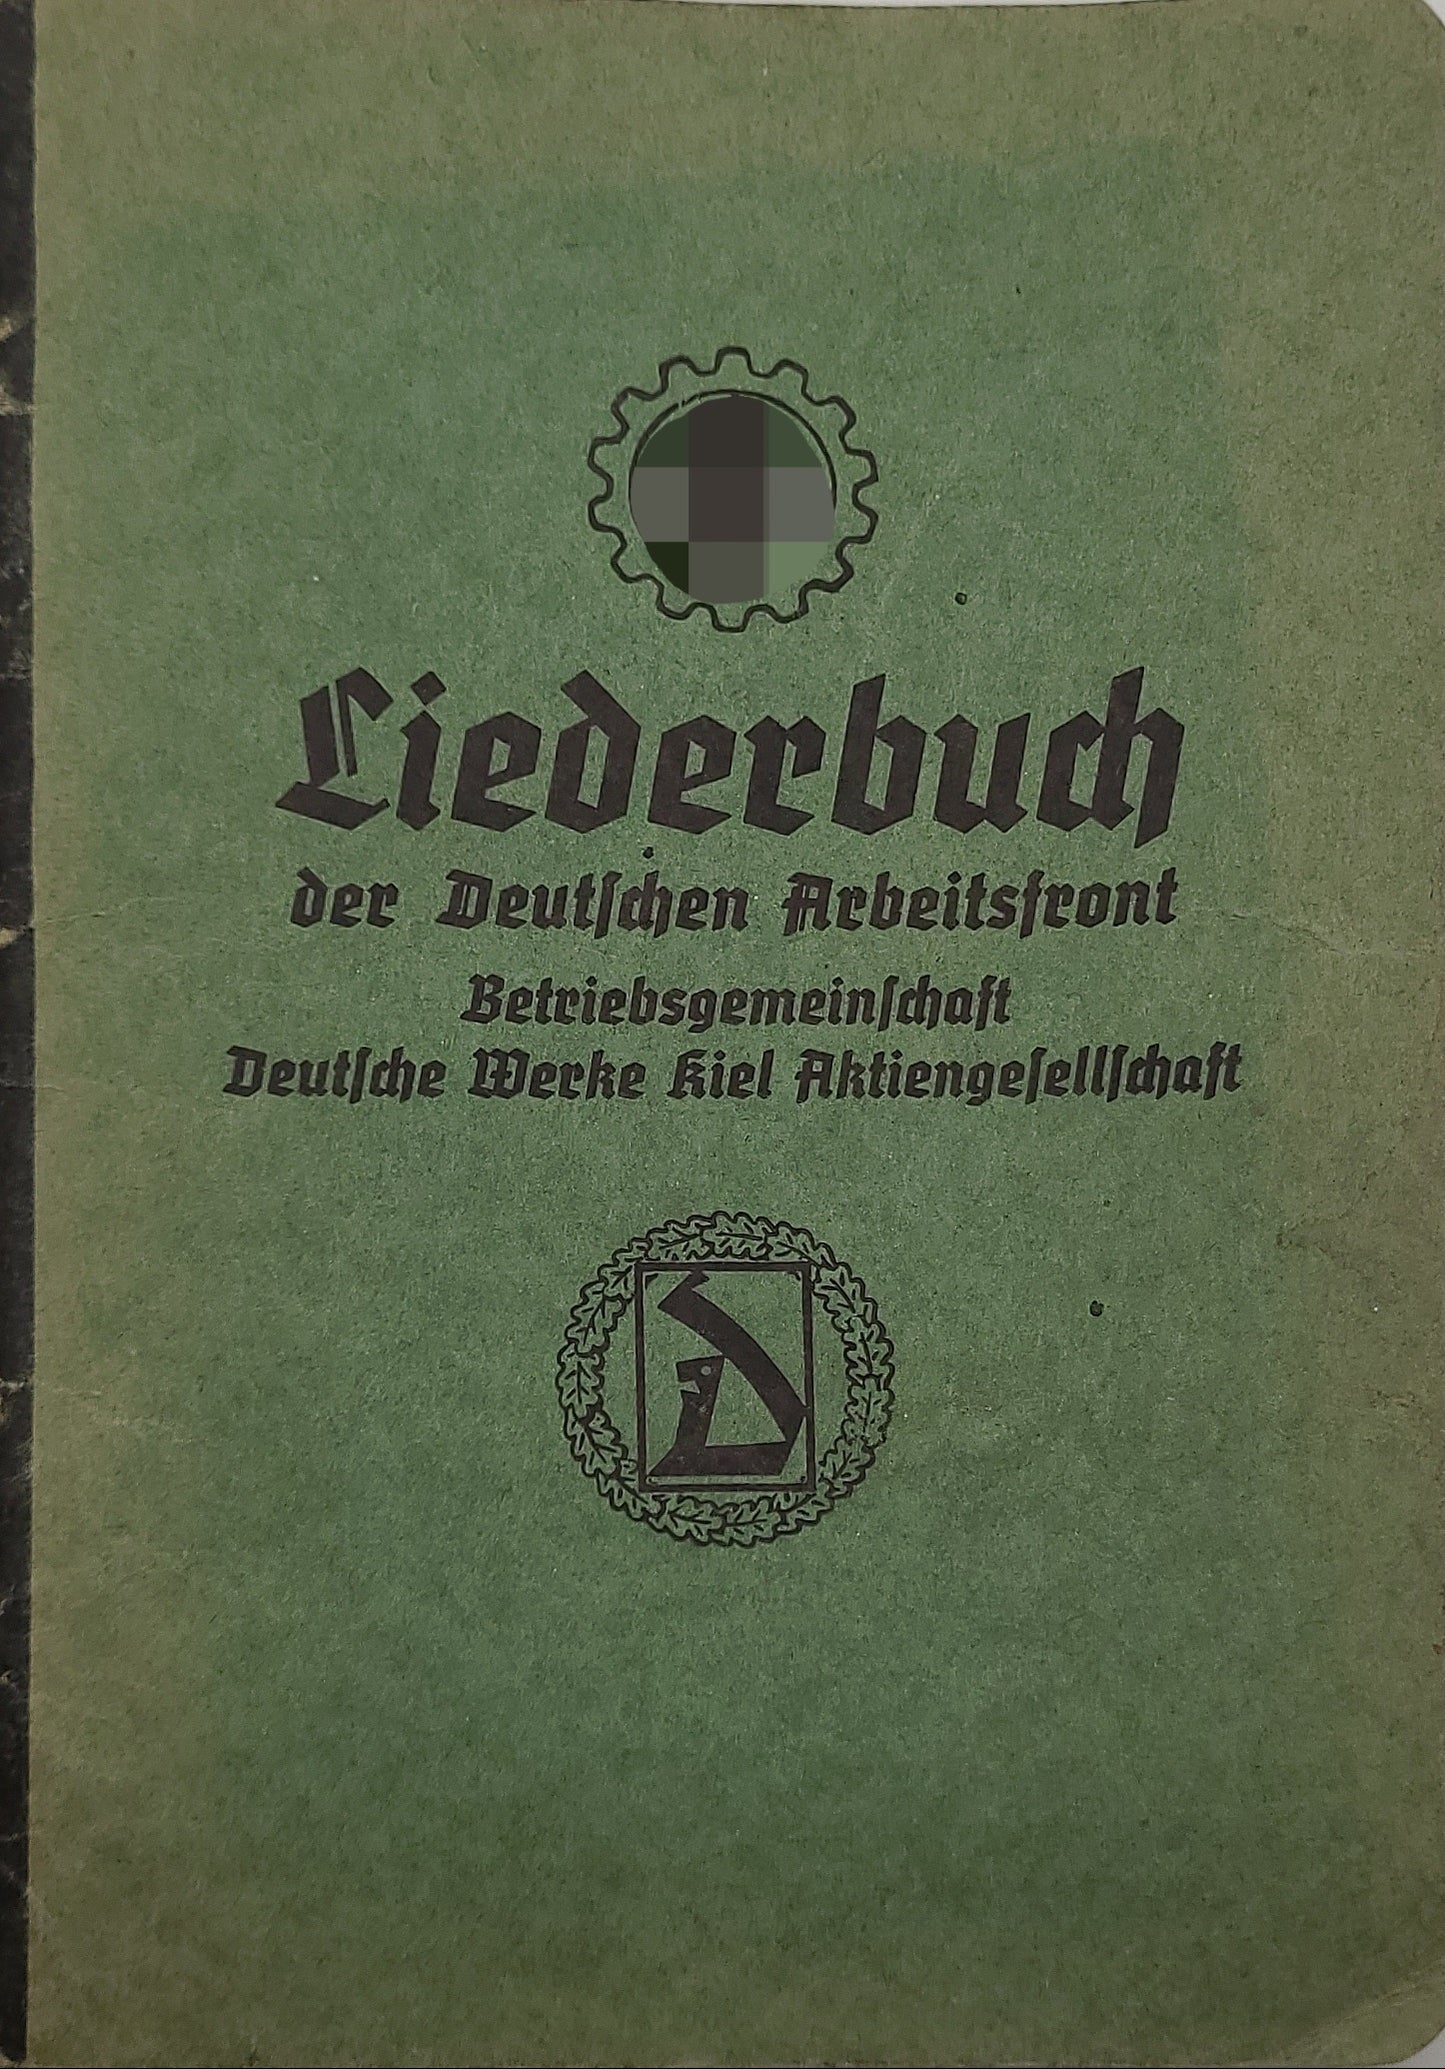 Liederbuch der Deutschen Arbeitsfront